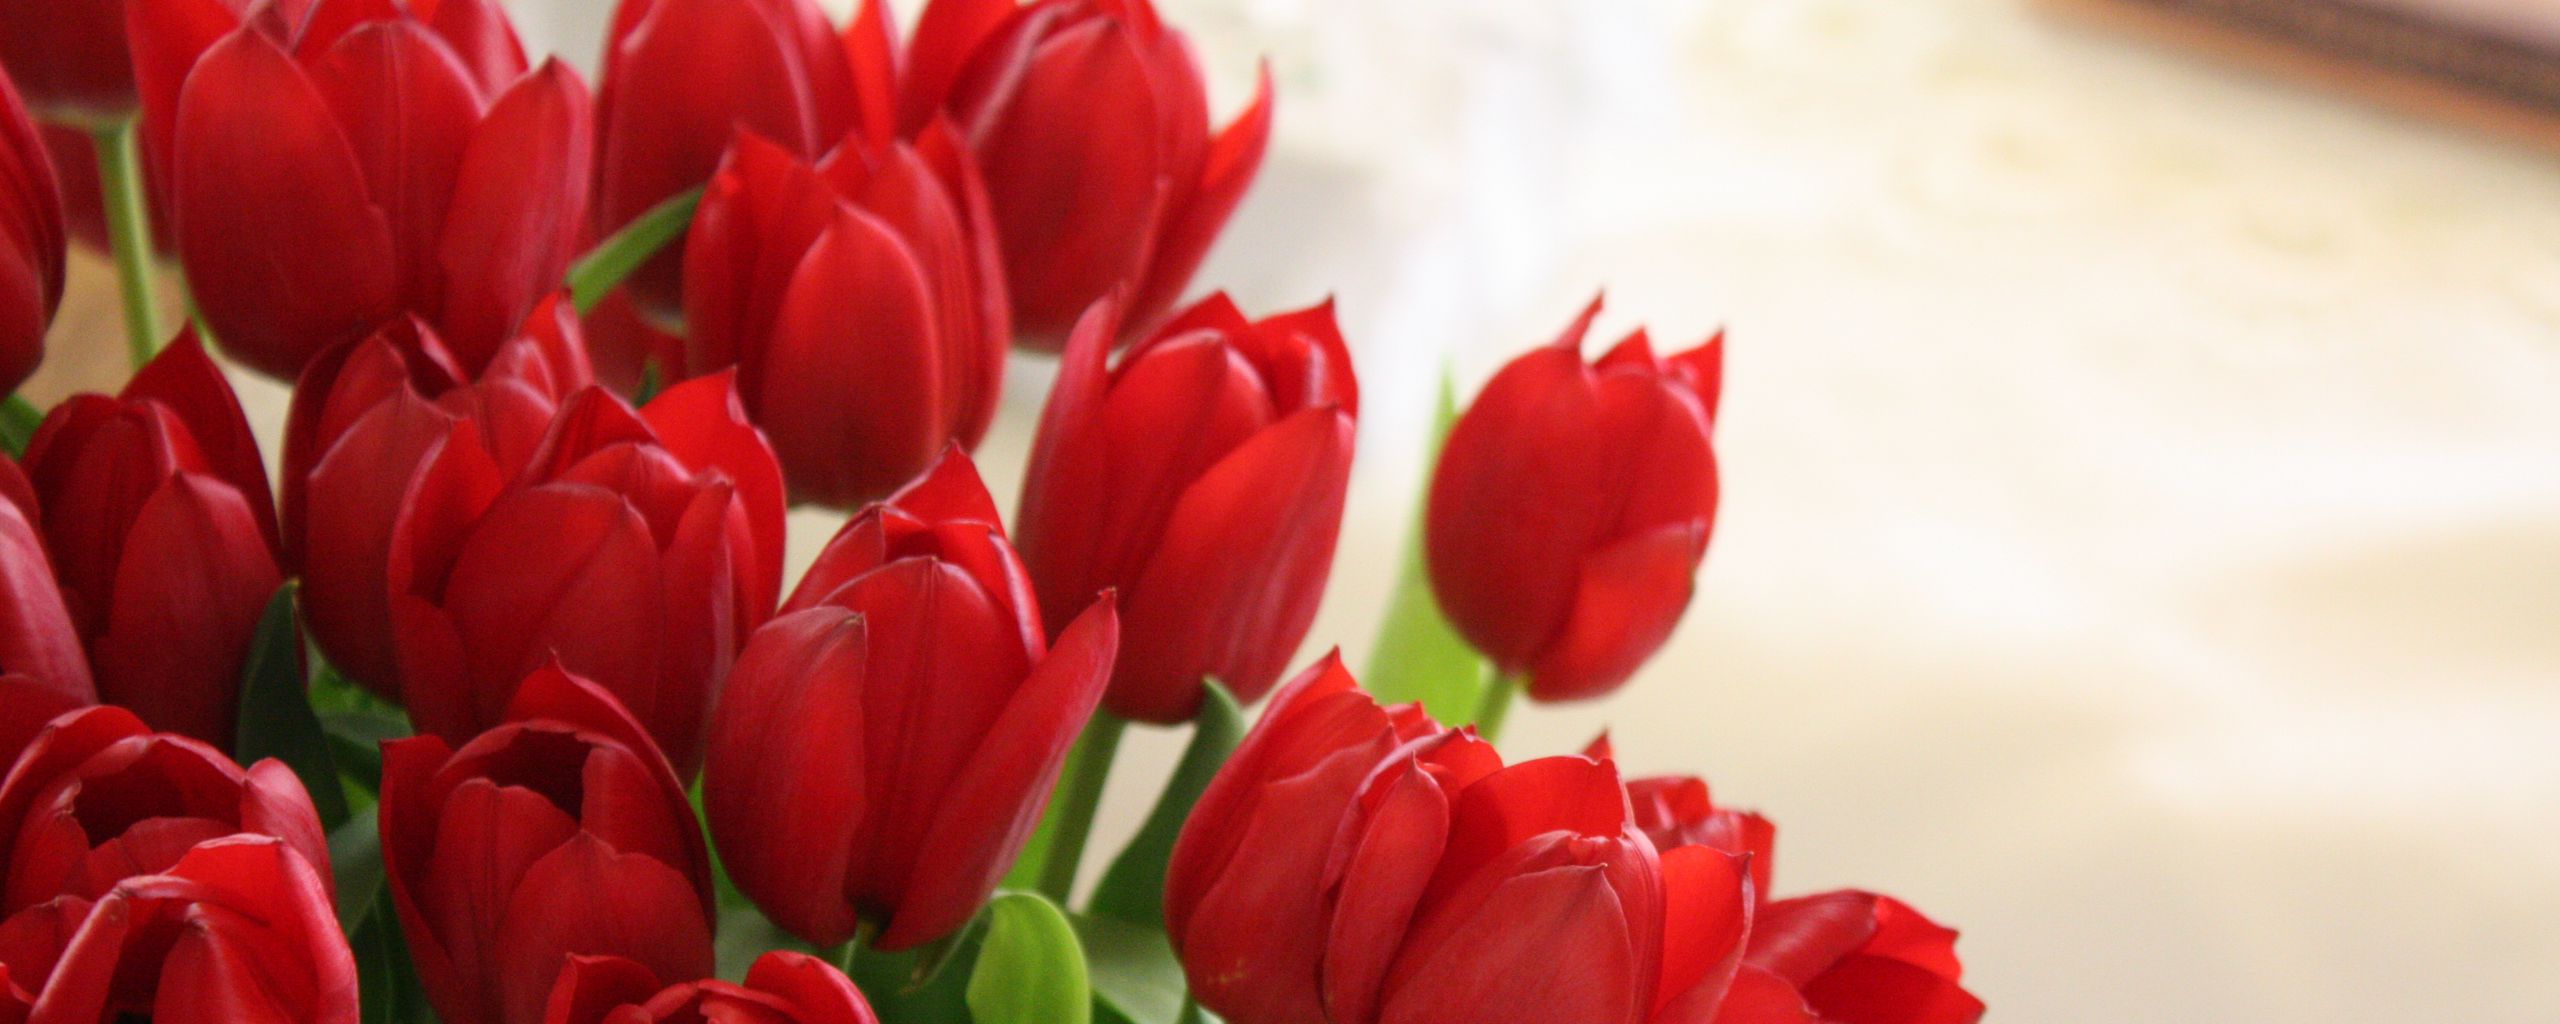 Với đầy đủ các màu sắc tươi sáng và phong cách sang trọng, những bông tulip trong hình sẽ khiến bạn thực sự ngất ngây.